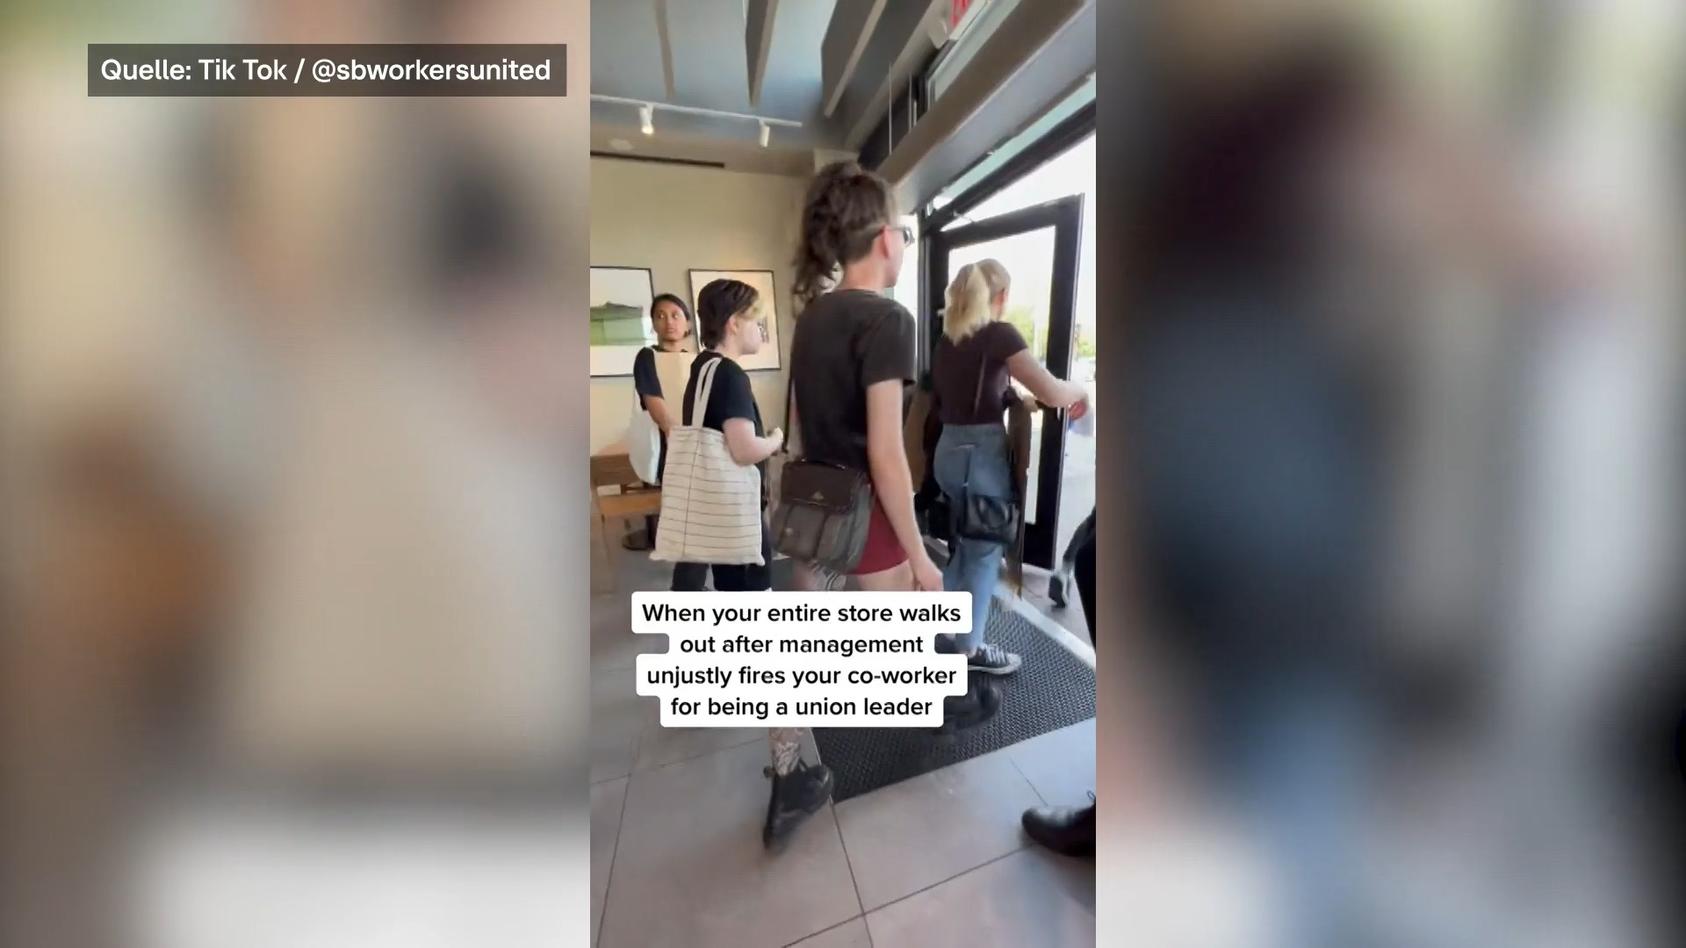 Mitarbeiter verlassen Filiale, weil Kollege gefeuert wurde Starbucks-Eklat